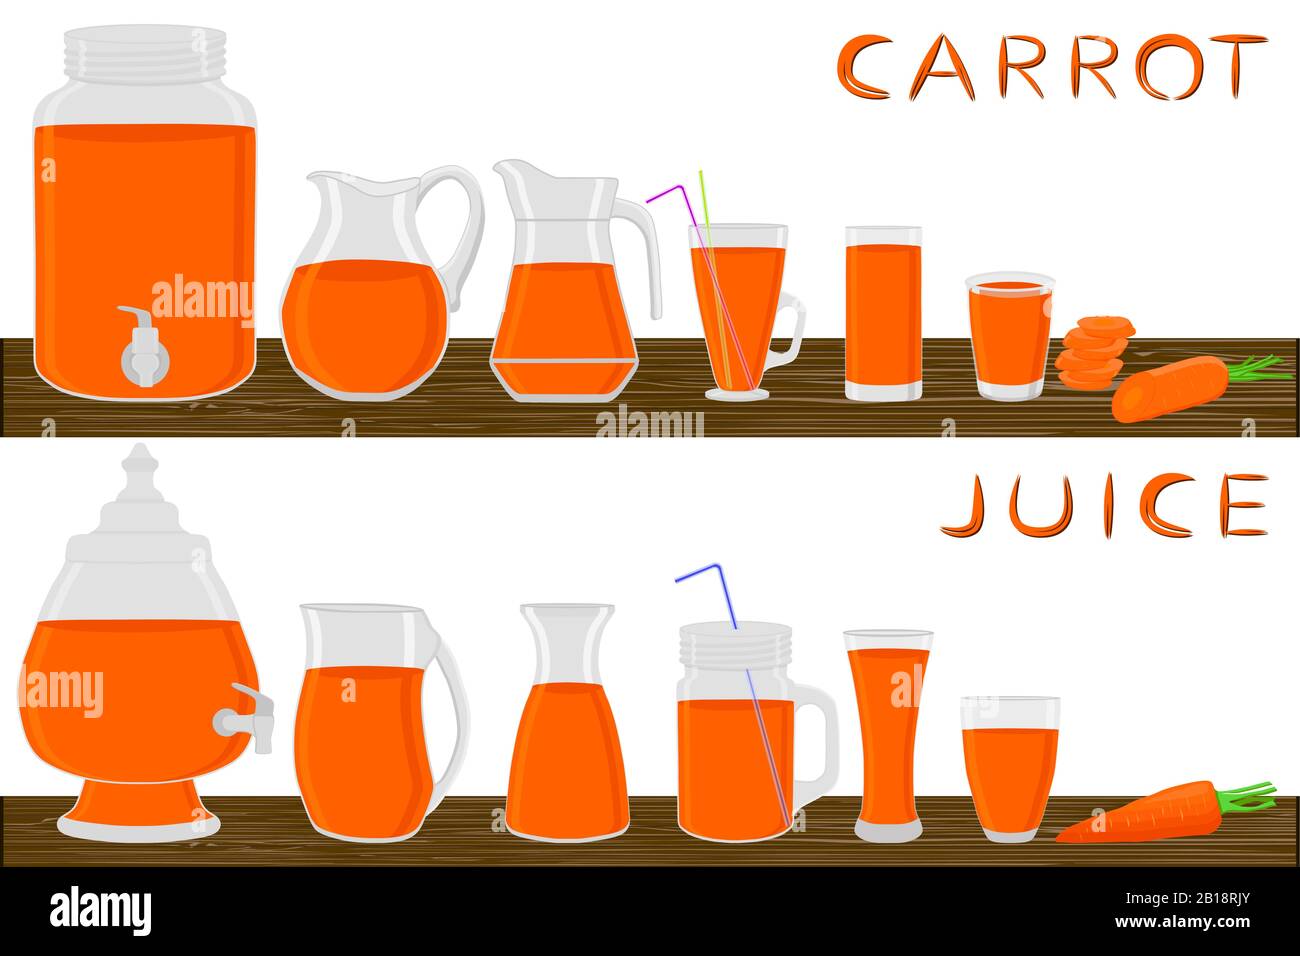 Illustrazione sul tema grande kit diversi tipi di vetreria, carota in tazze di varie dimensioni. Vetreria costituita da tazze in plastica organica per carote fluide. J Illustrazione Vettoriale